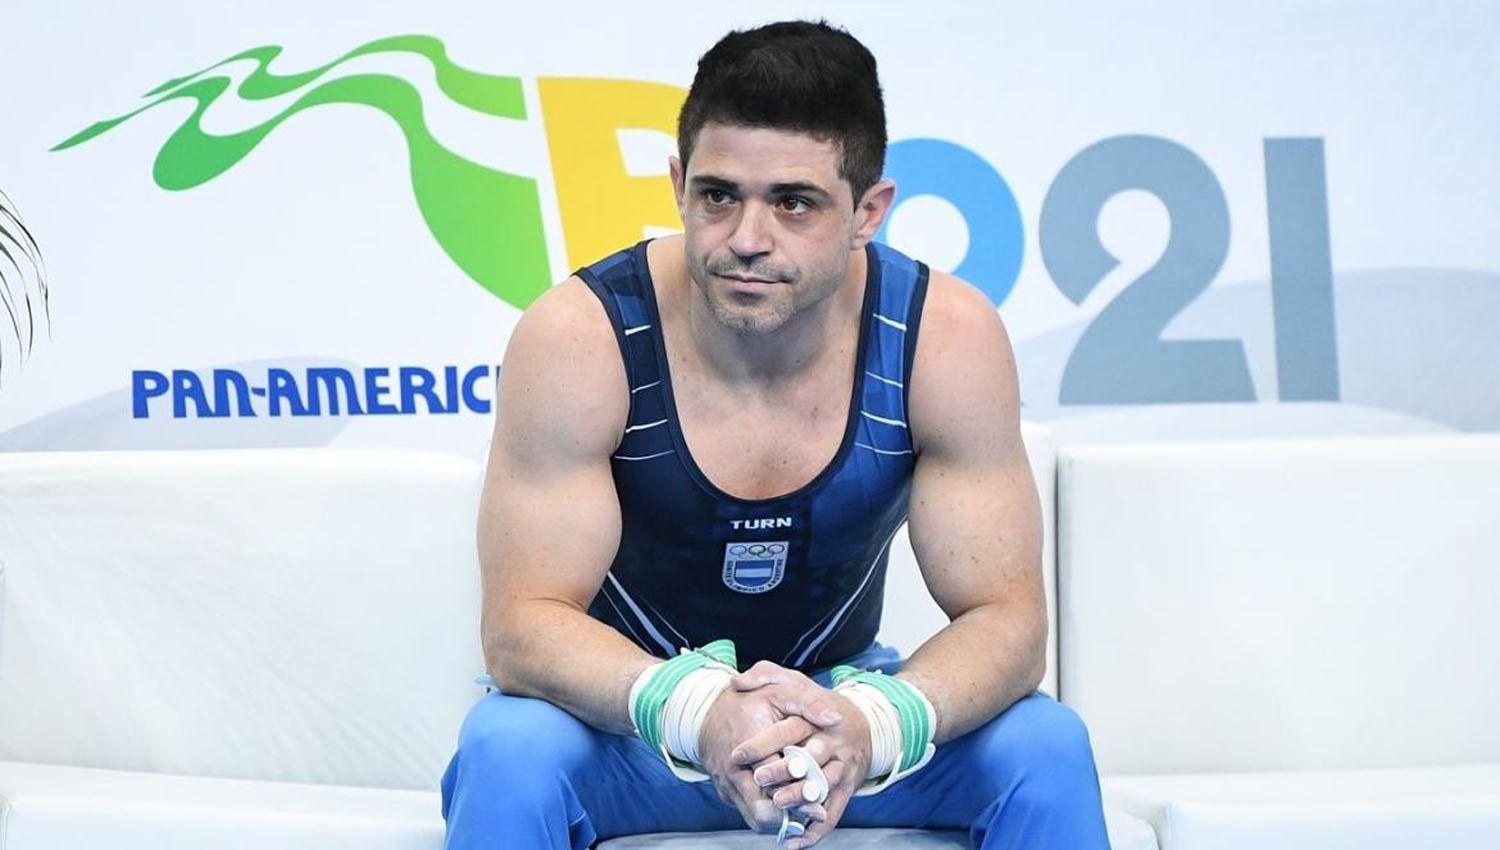 El gimnasta oliacutempico Federico Molinari fue denunciado por acoso a una menor de edad